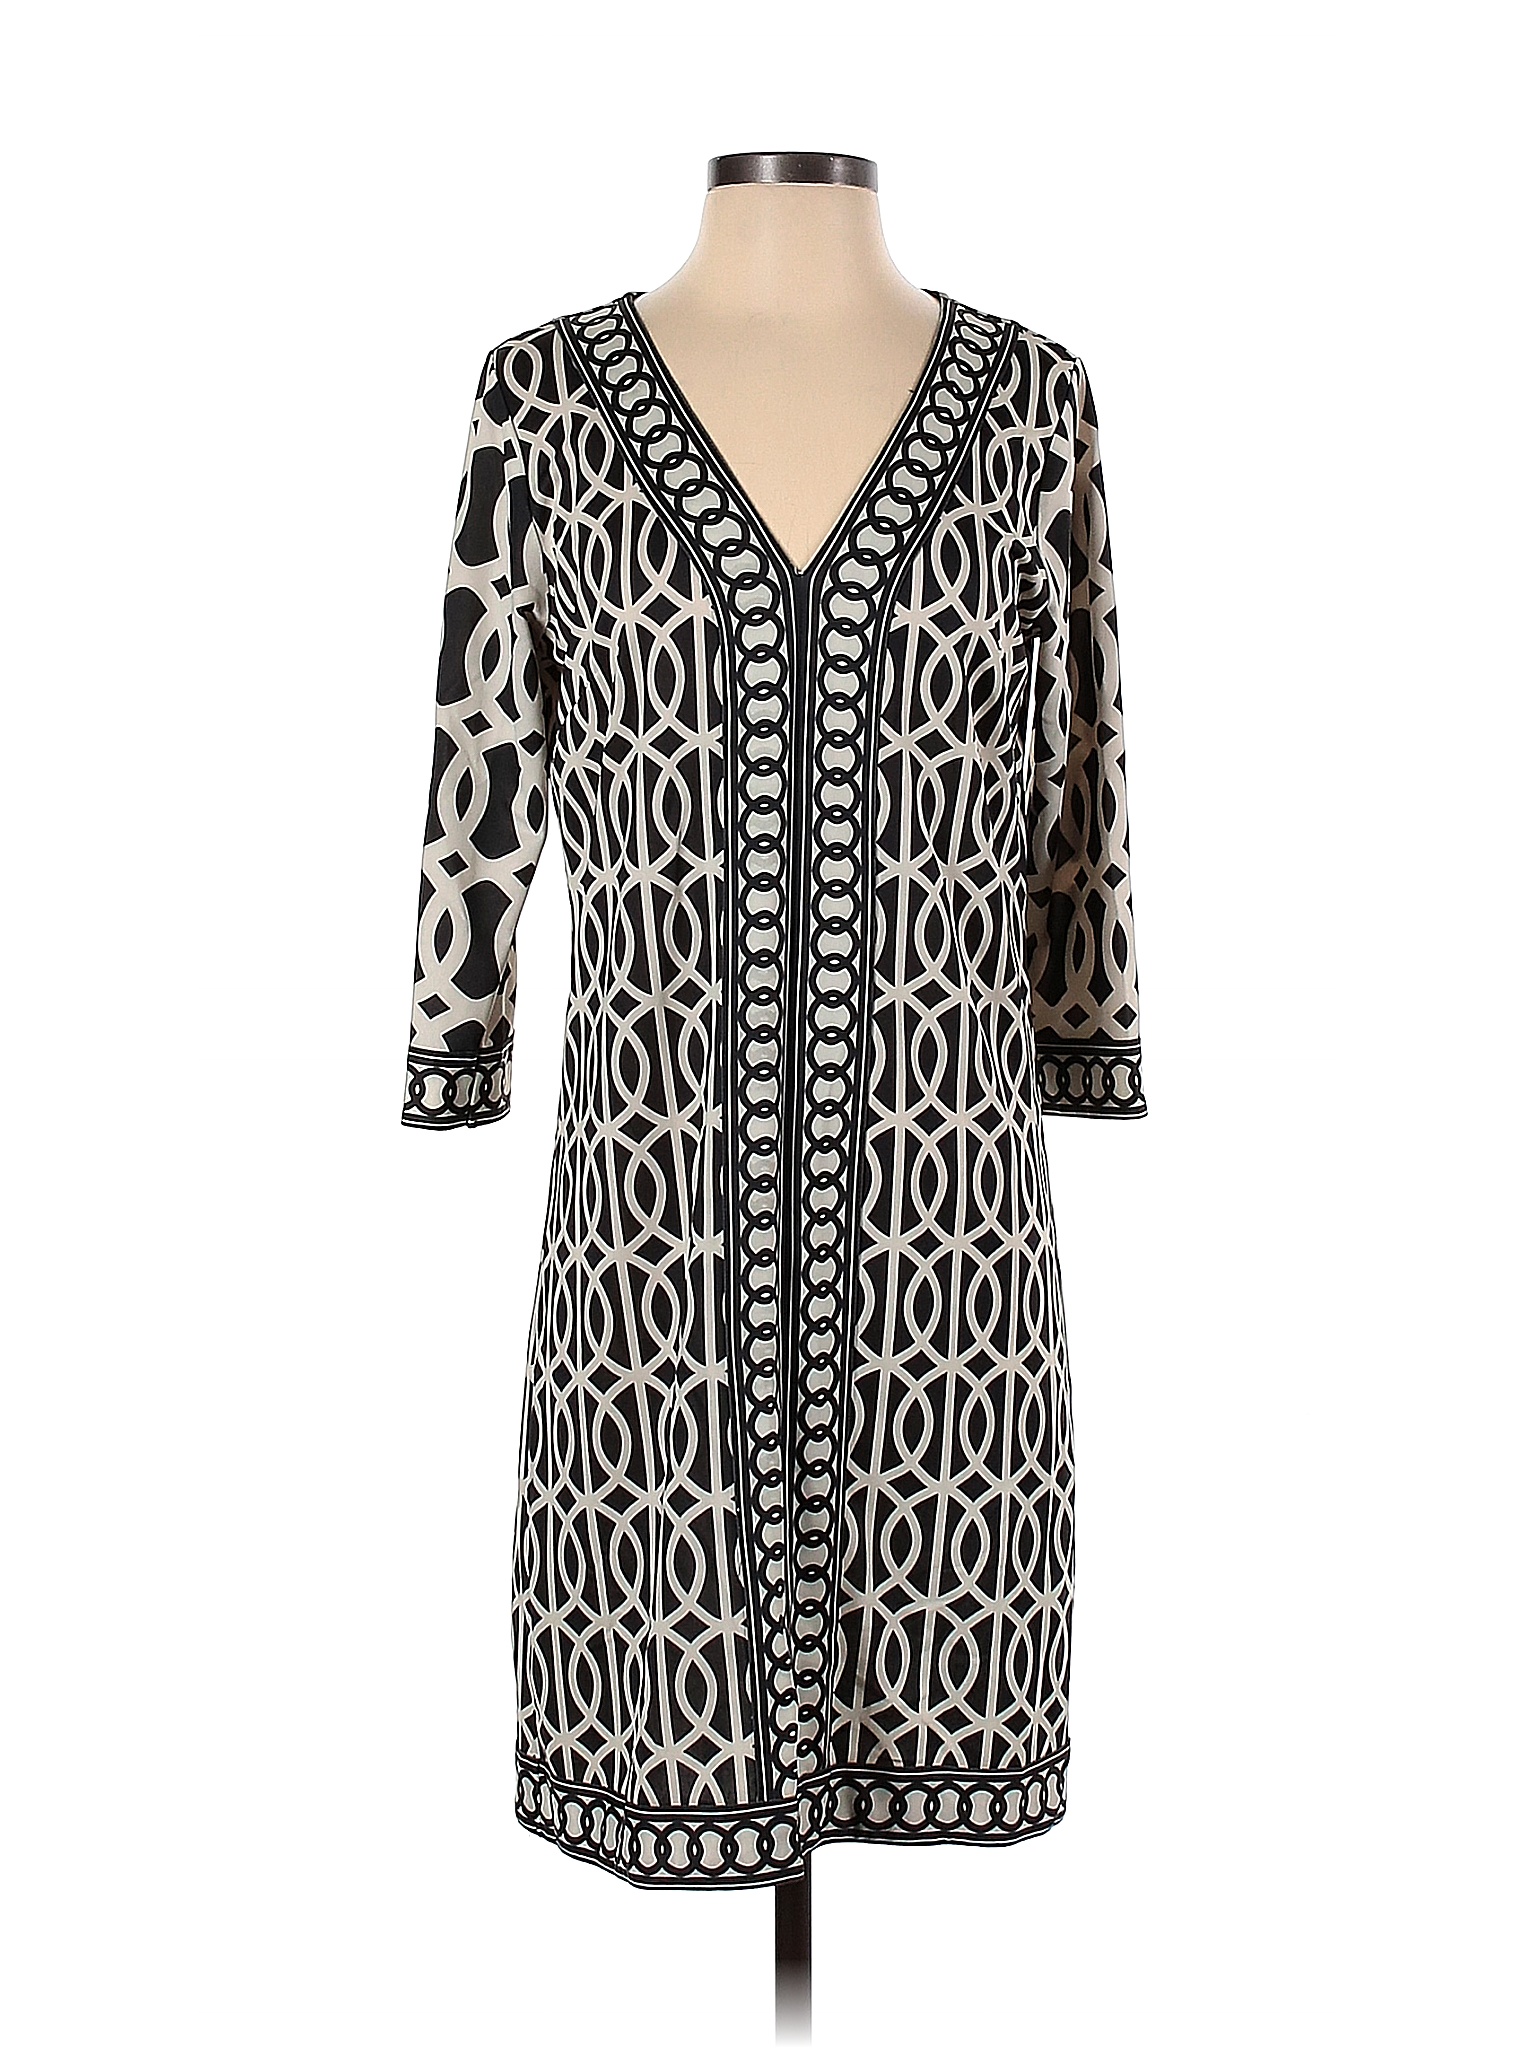 Gretchen Scott Designs Multi Color Black Casual Dress Size S - 85% off ...